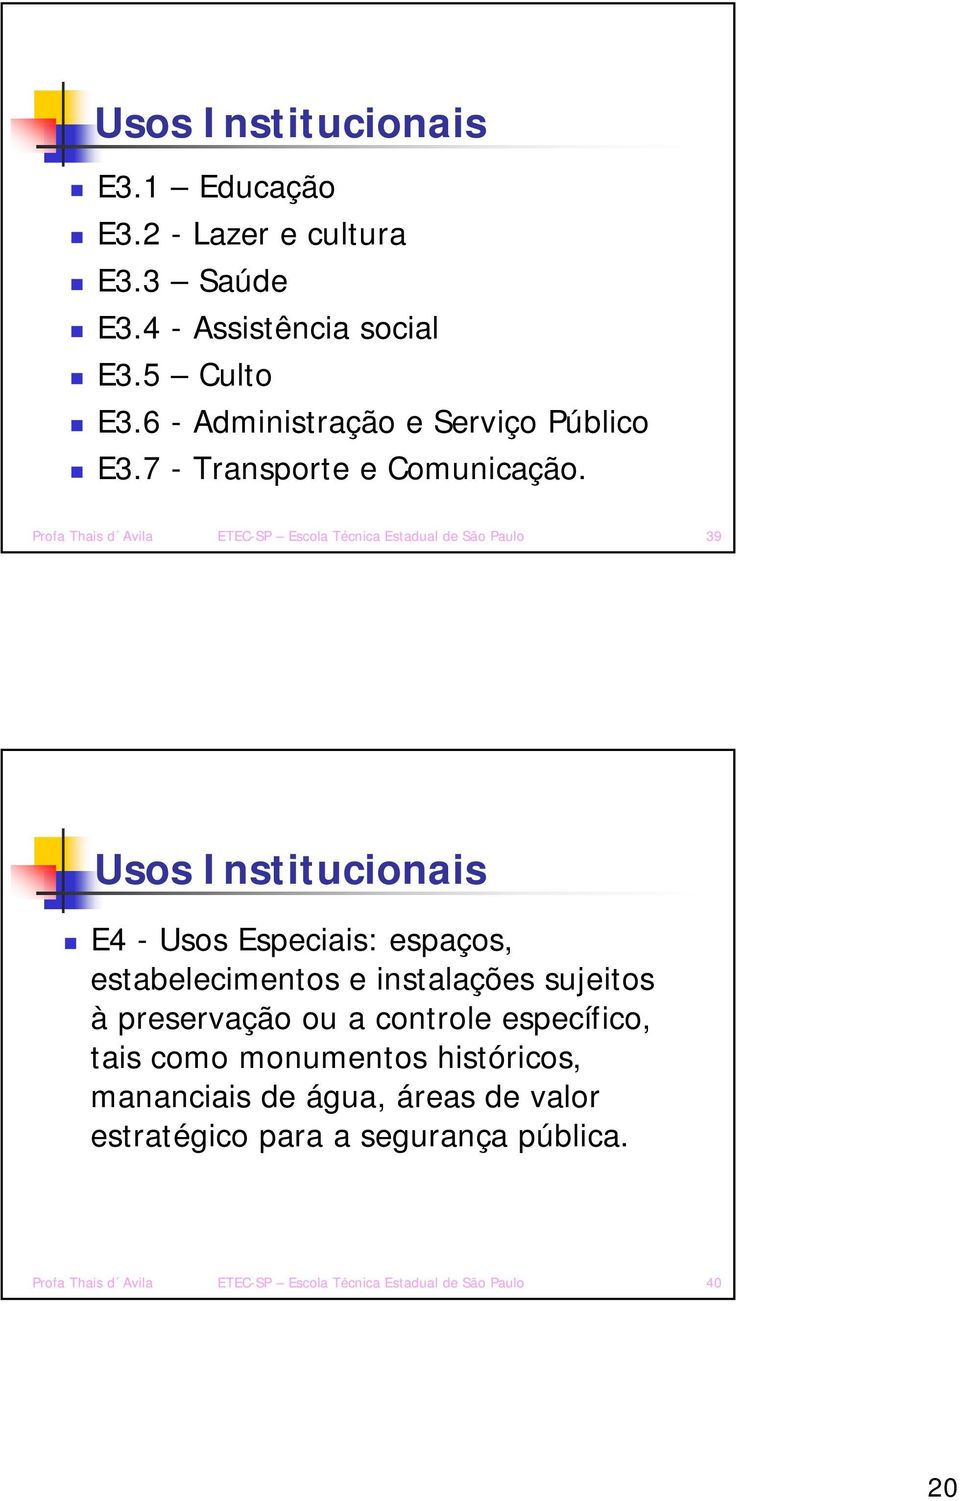 Profa Thais d Avila ETEC-SP Escola Técnica Estadual de São Paulo 39 Usos Institucionais E4 - Usos Especiais: espaços, estabelecimentos e